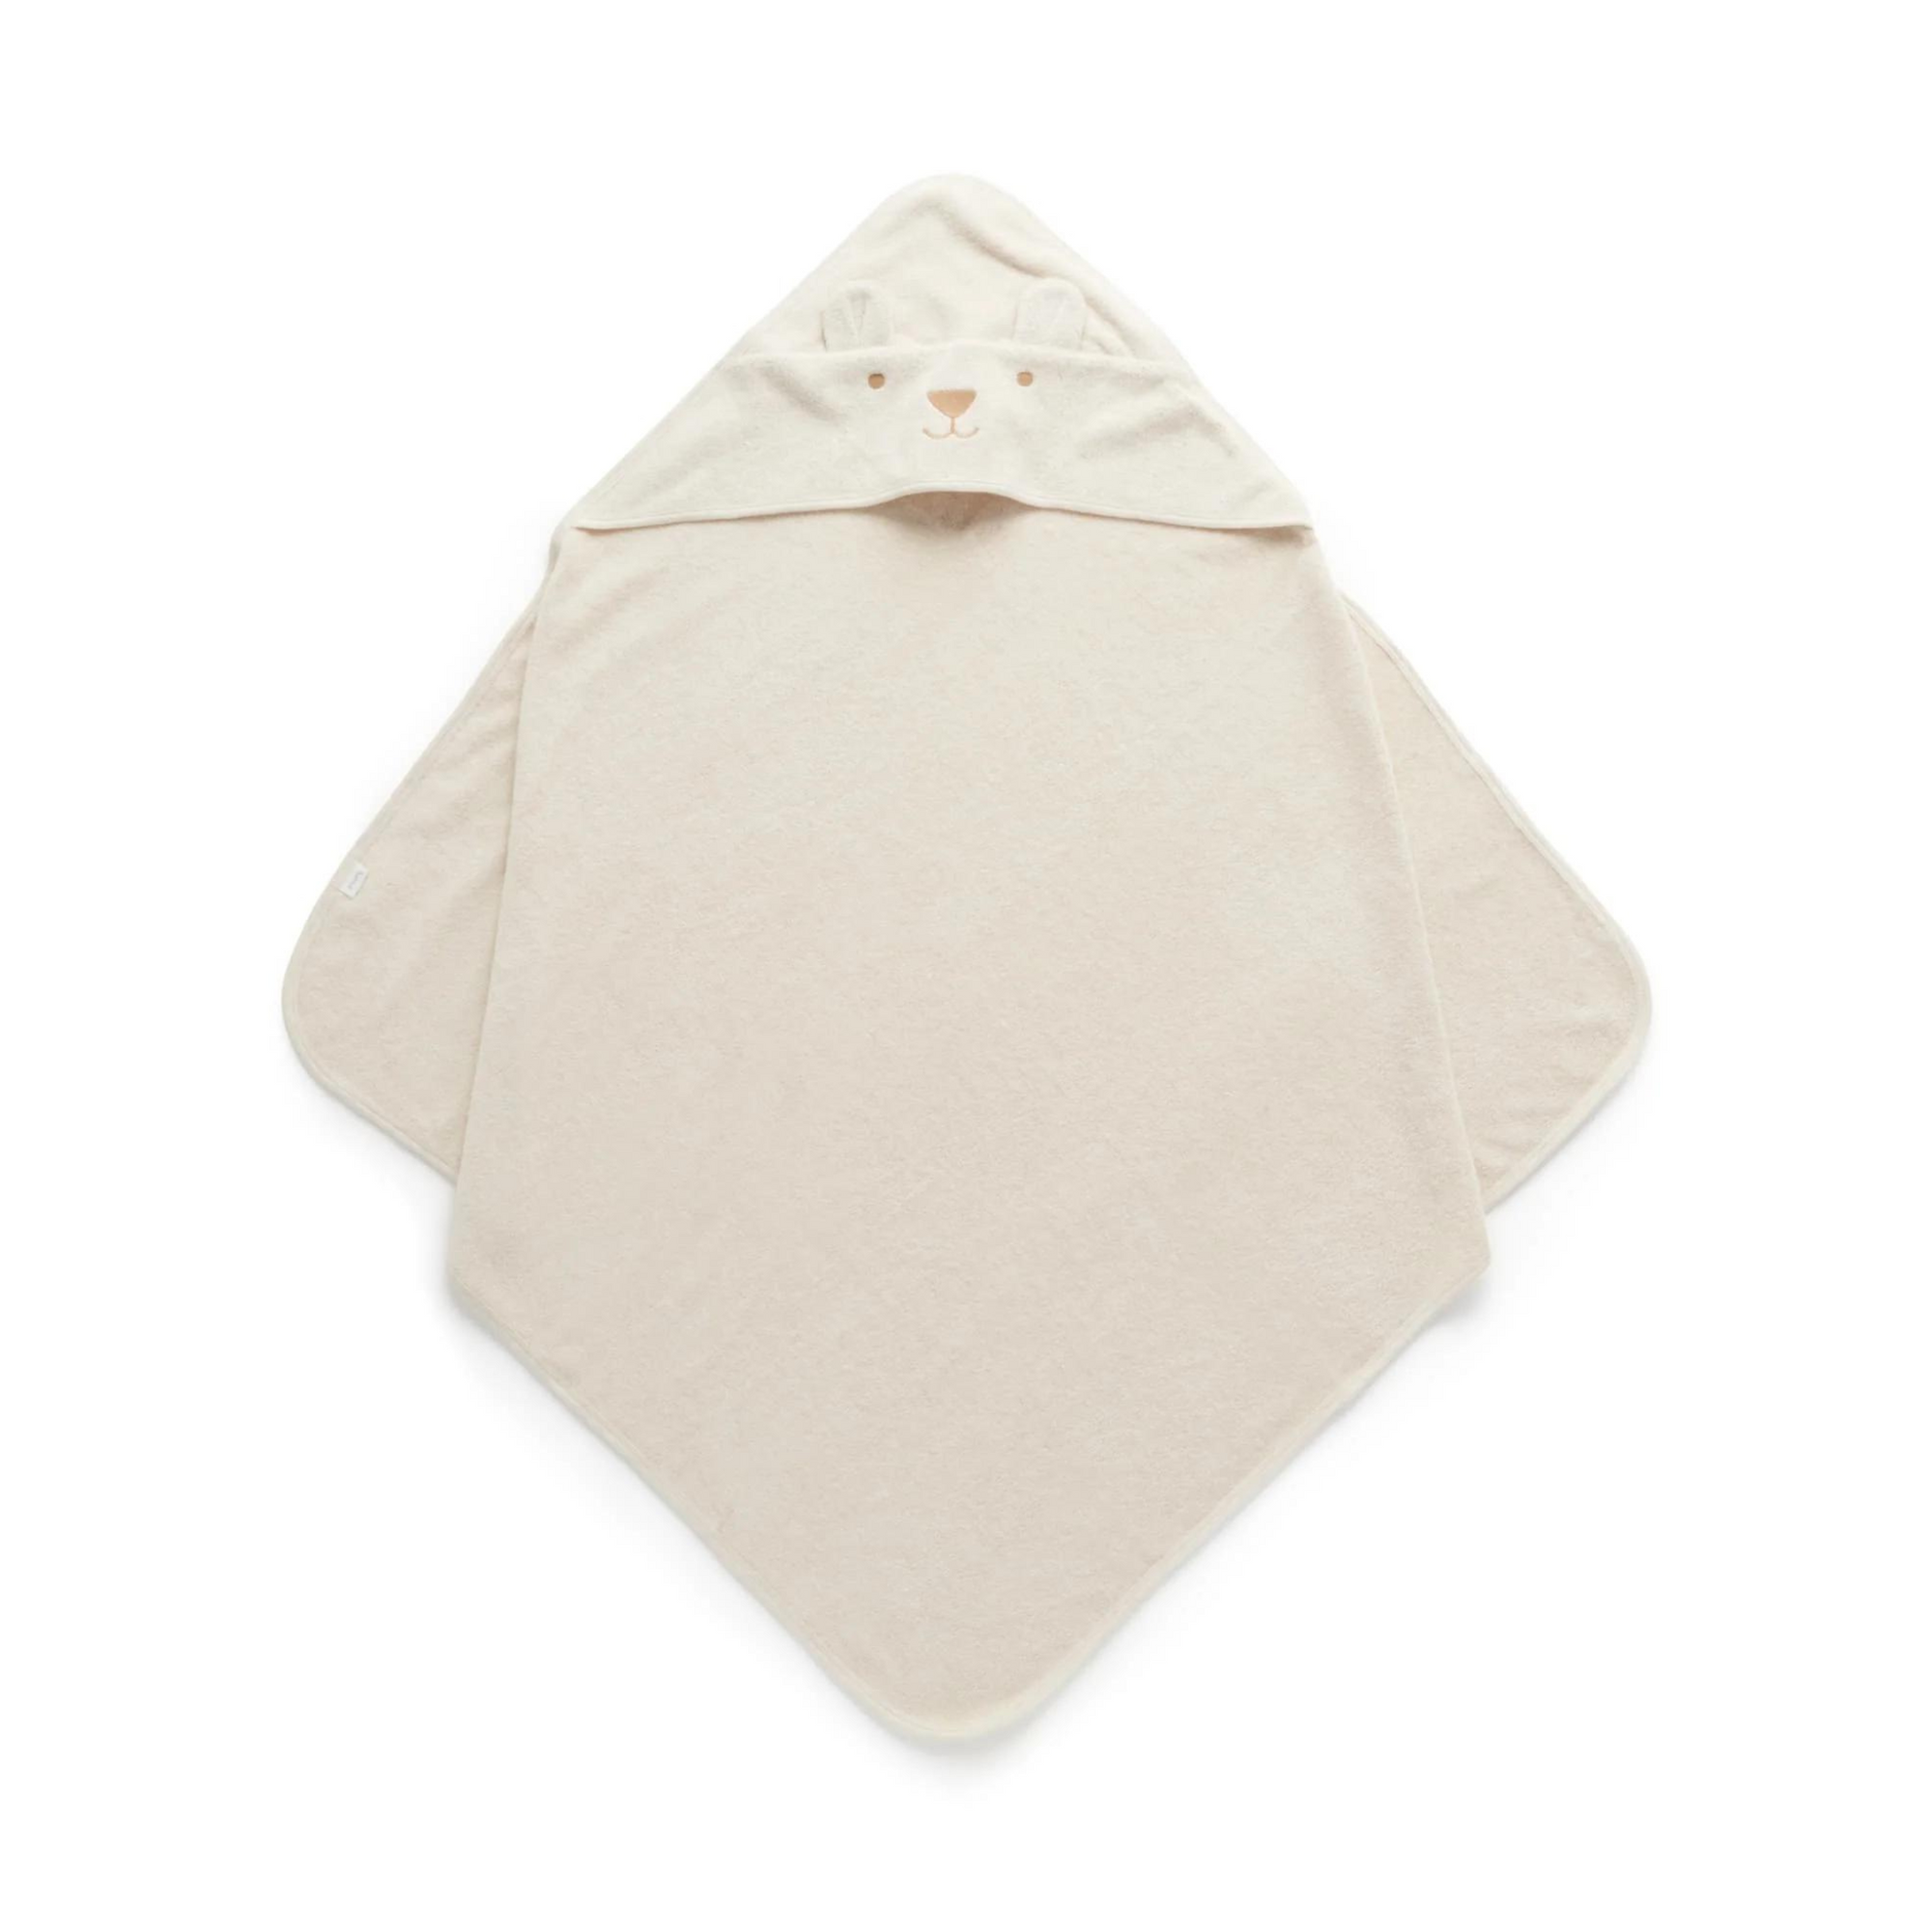 Purebaby Hooded Towel - Wheat Melange Bear